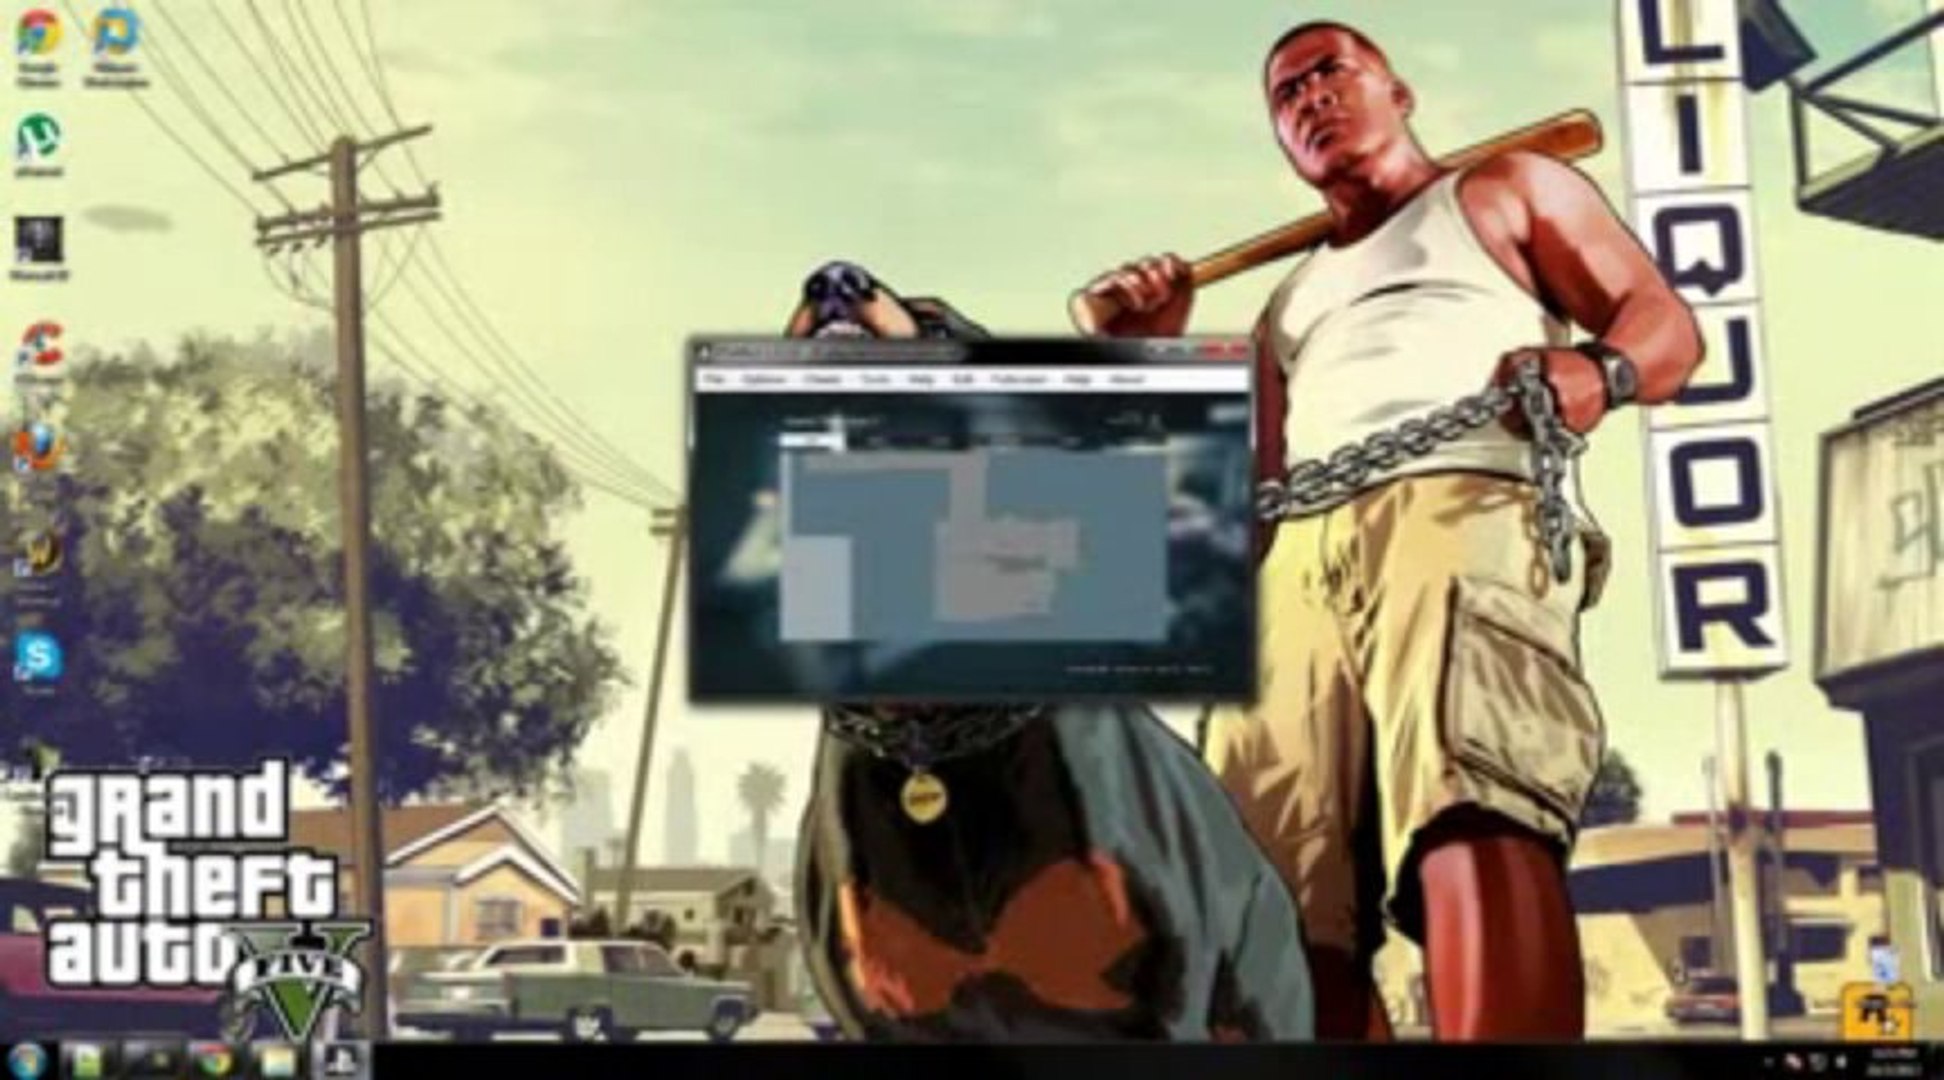 PS3 Emulator Playstation 3 Emulator for PC running GTA 5 - video Dailymotion